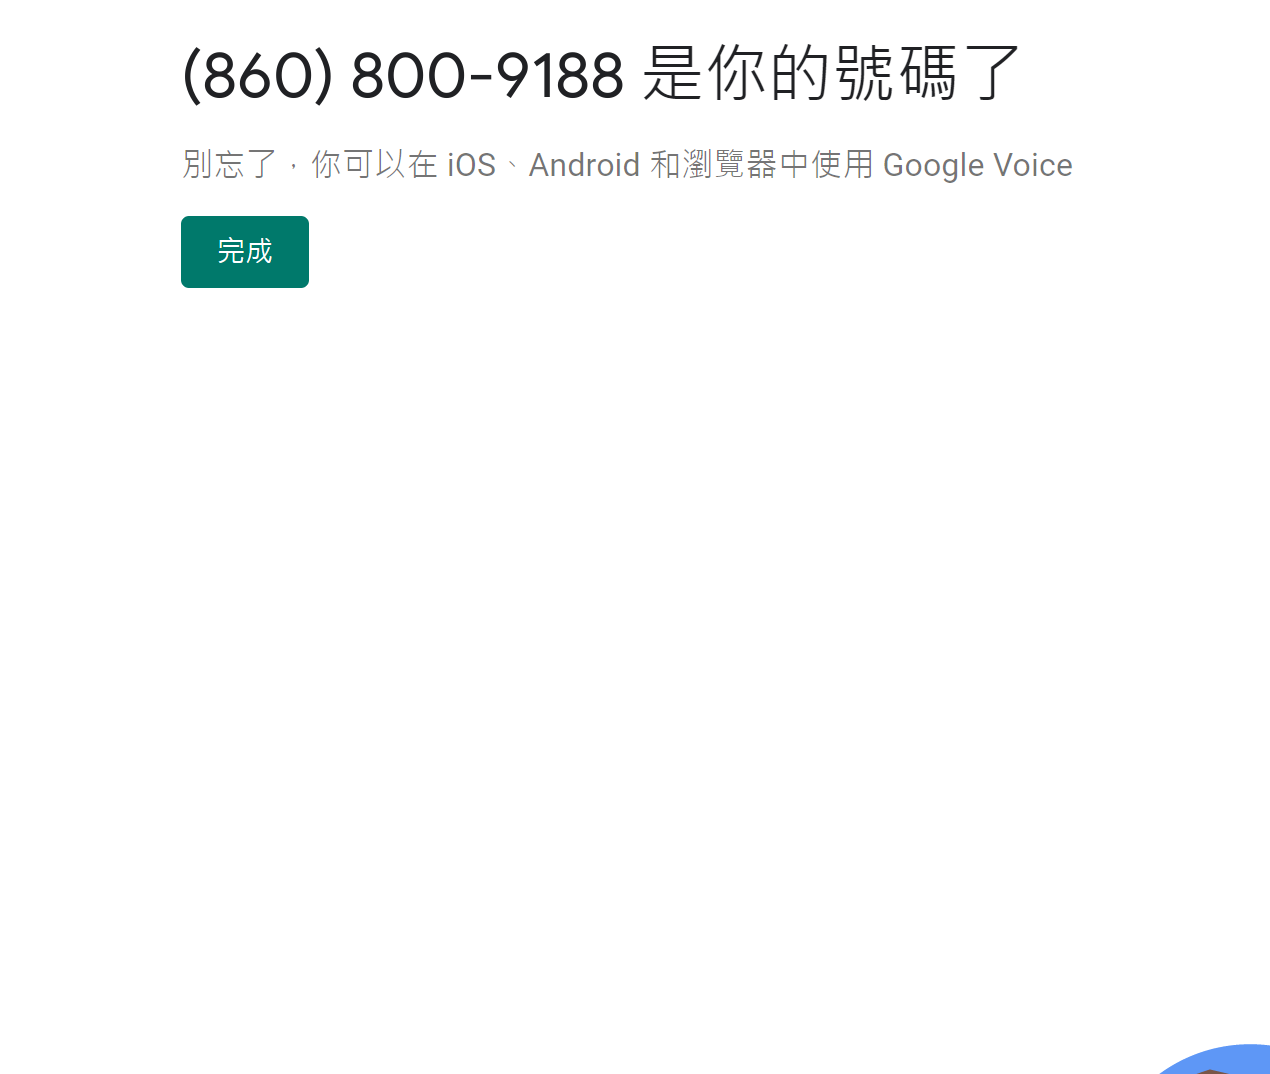 ‪(860) 800-9188‬ 是你的號碼了.png